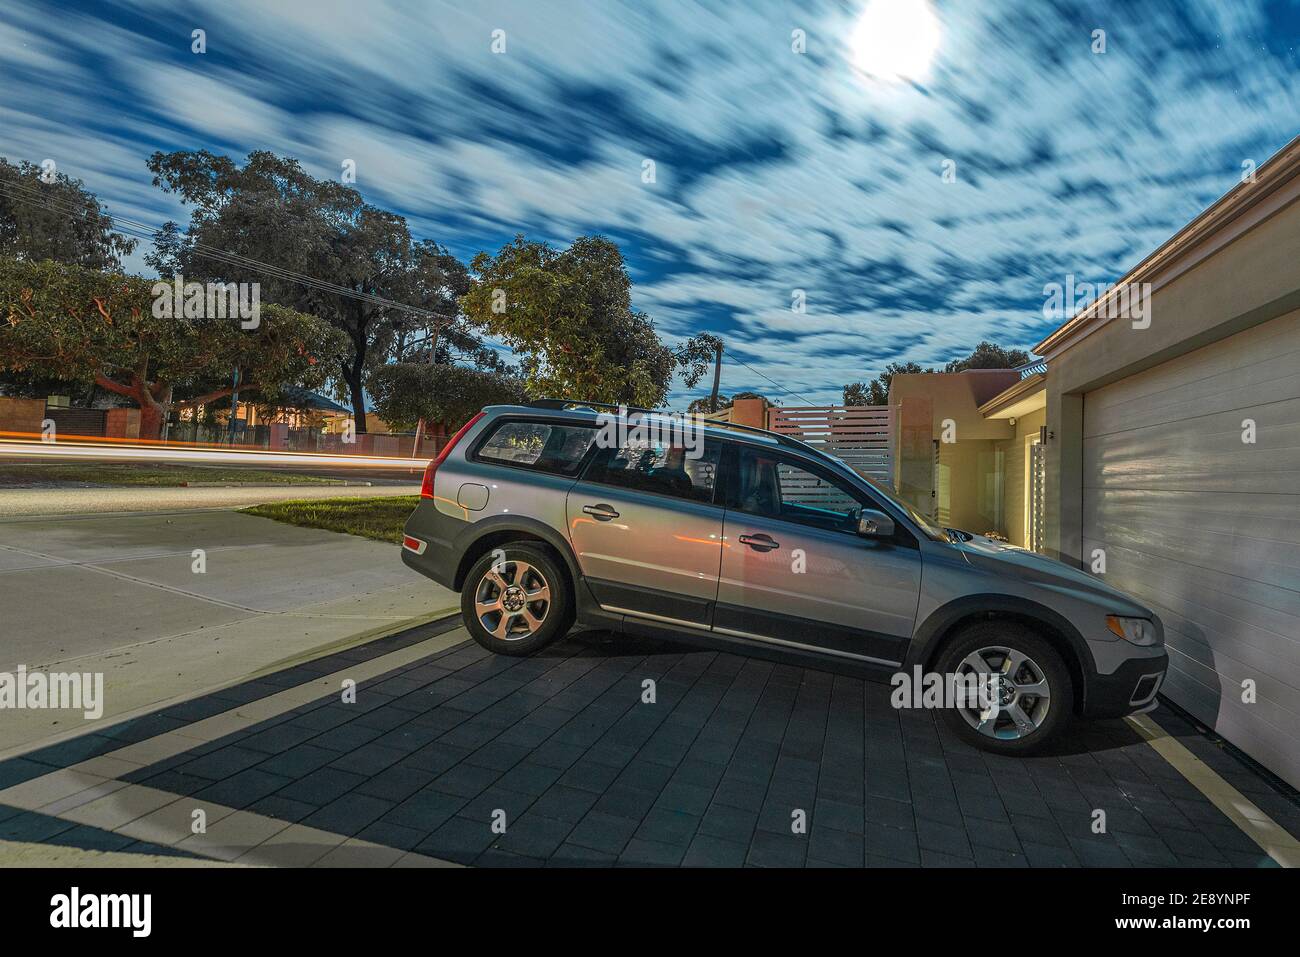 Un'esposizione notturna al chiaro di luna di una moderna strada suburbana australiana, con un'auto Volvo in un vialetto. Foto Stock